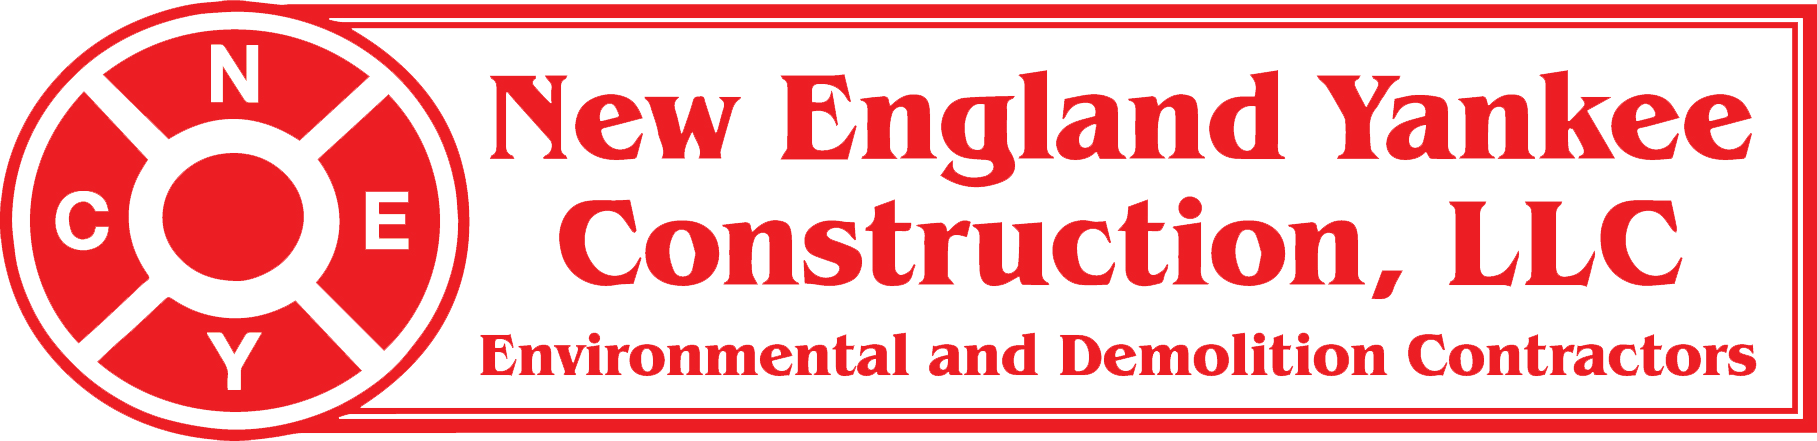 best demolition contractor in connecticut - demolition contractors ct - new england yankee